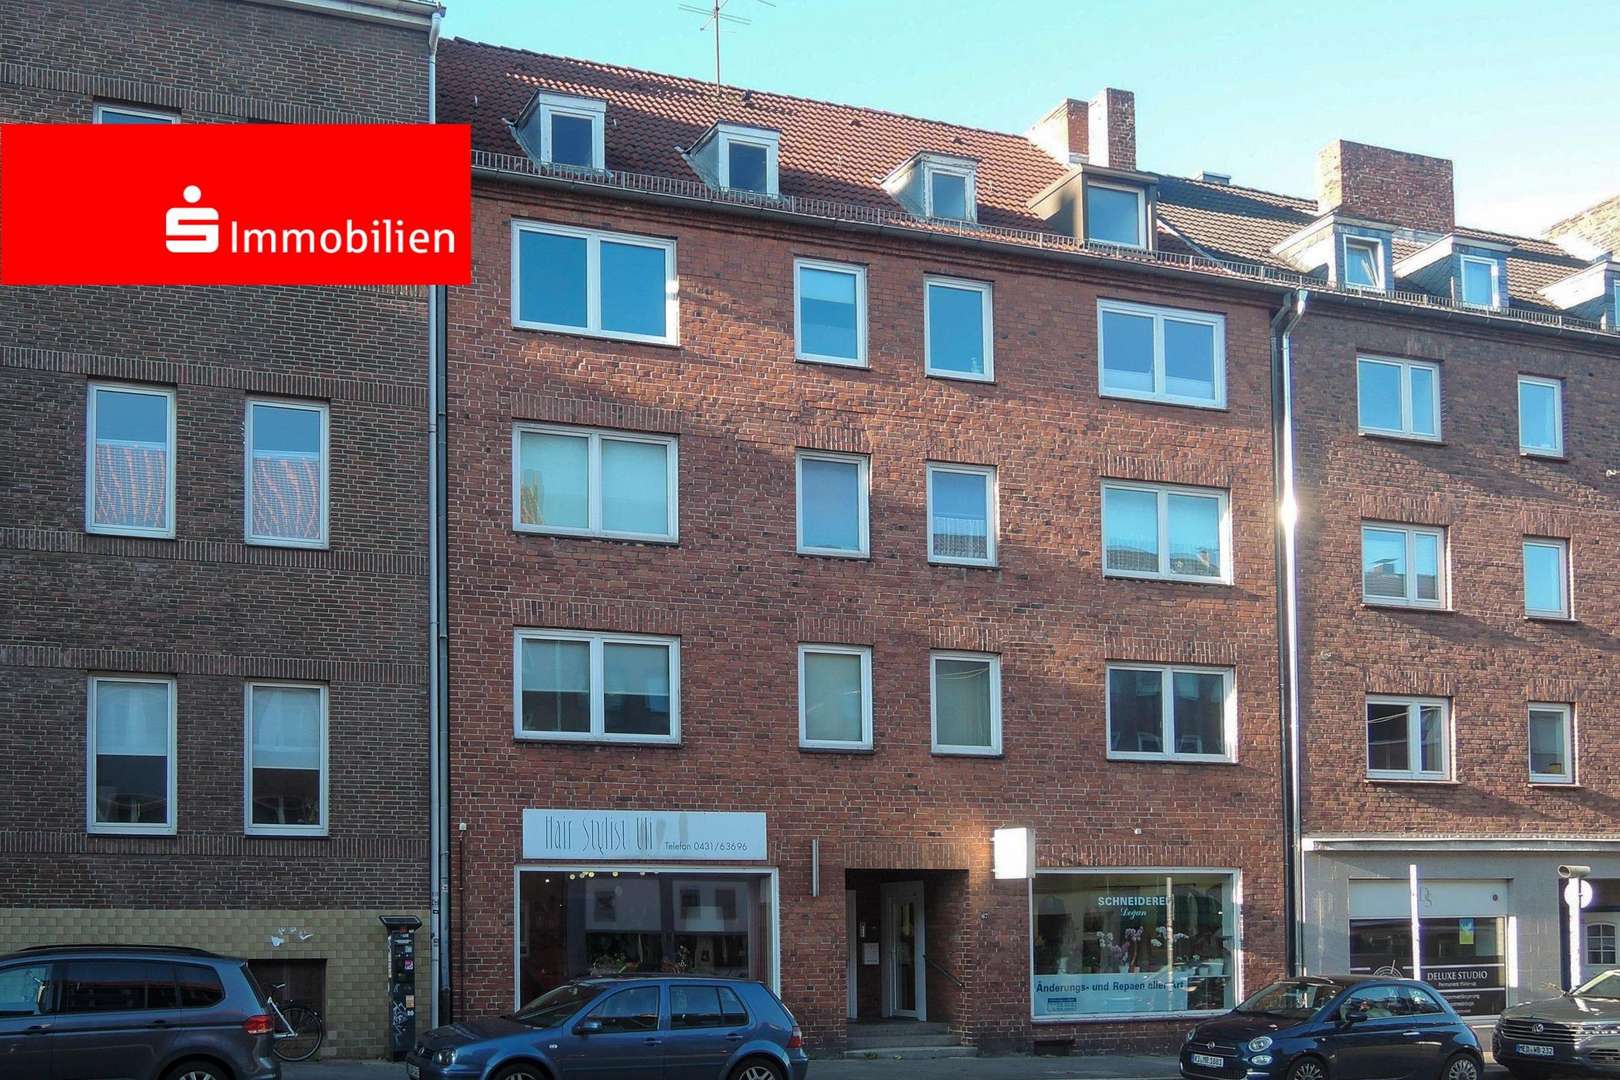 Frontfassade  - Etagenwohnung in 24114 Kiel mit 58m² als Kapitalanlage günstig kaufen